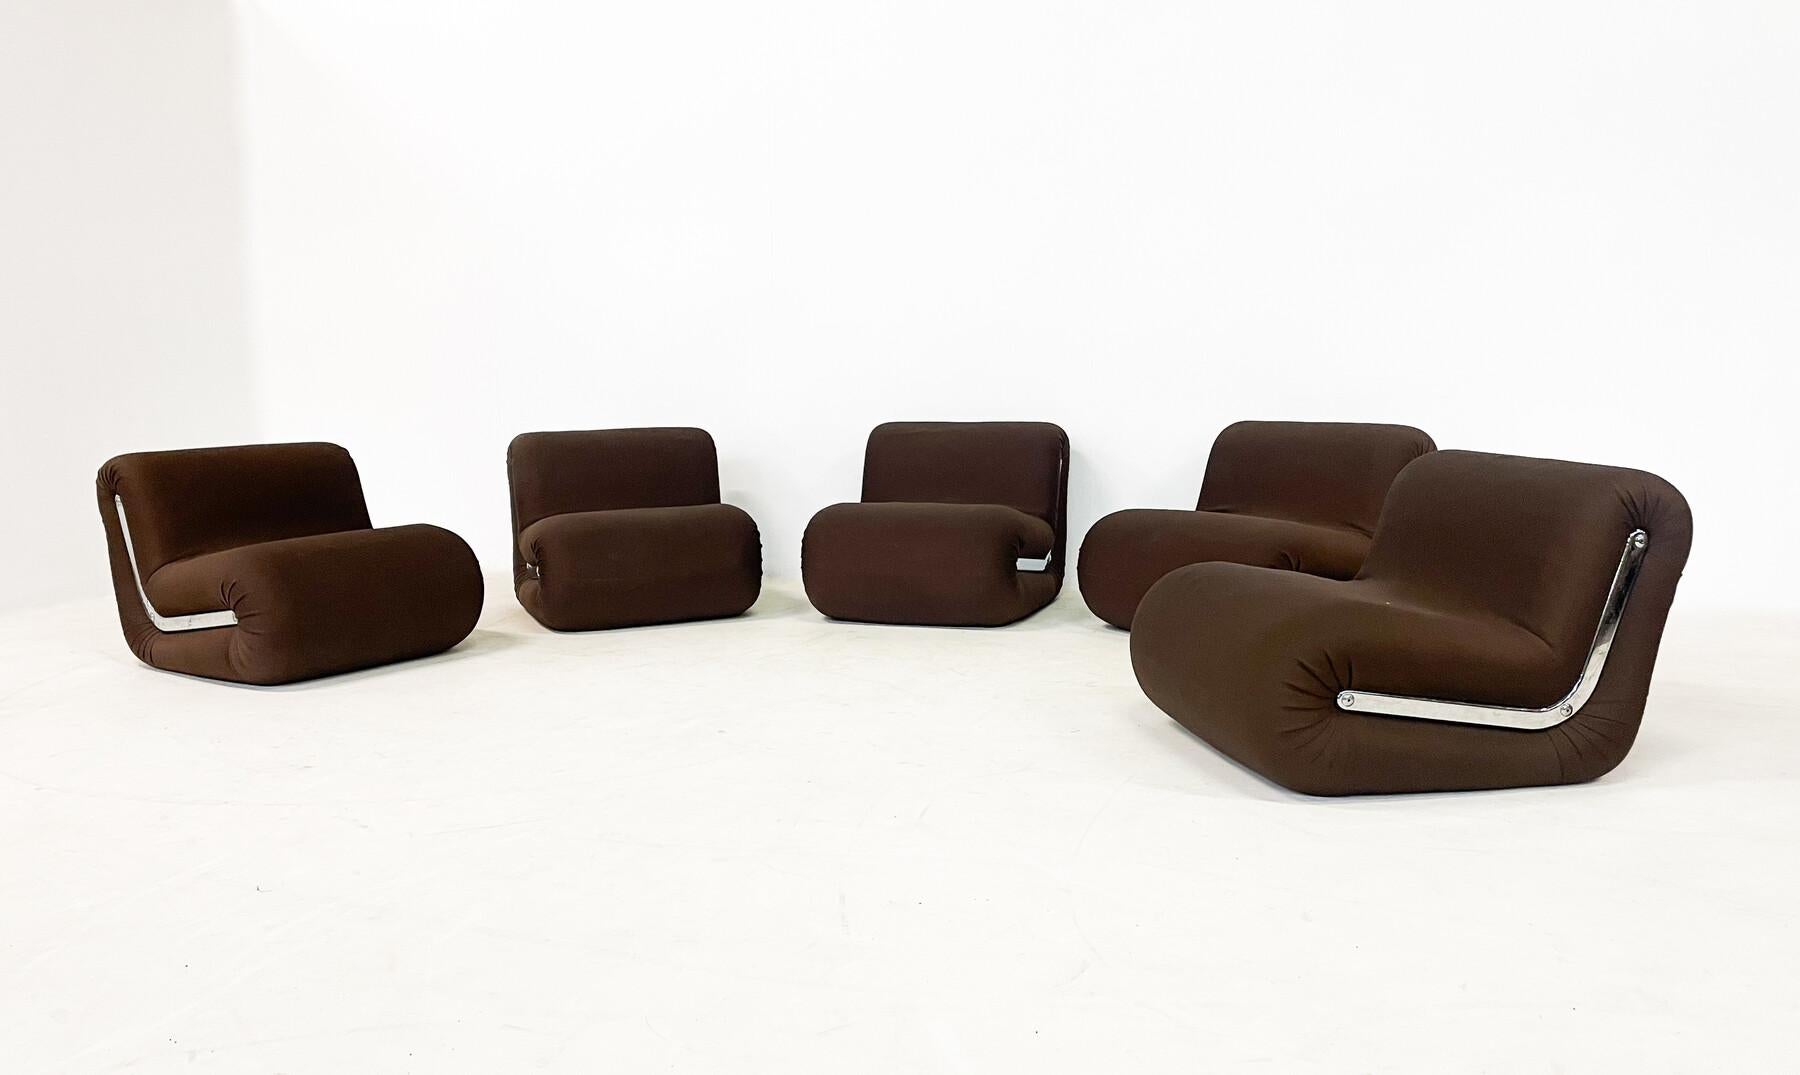 Moderne Bumerang-Sessel von Rodolfo Bonetto, 1960er Jahre, Italien - Einzeln verkauft